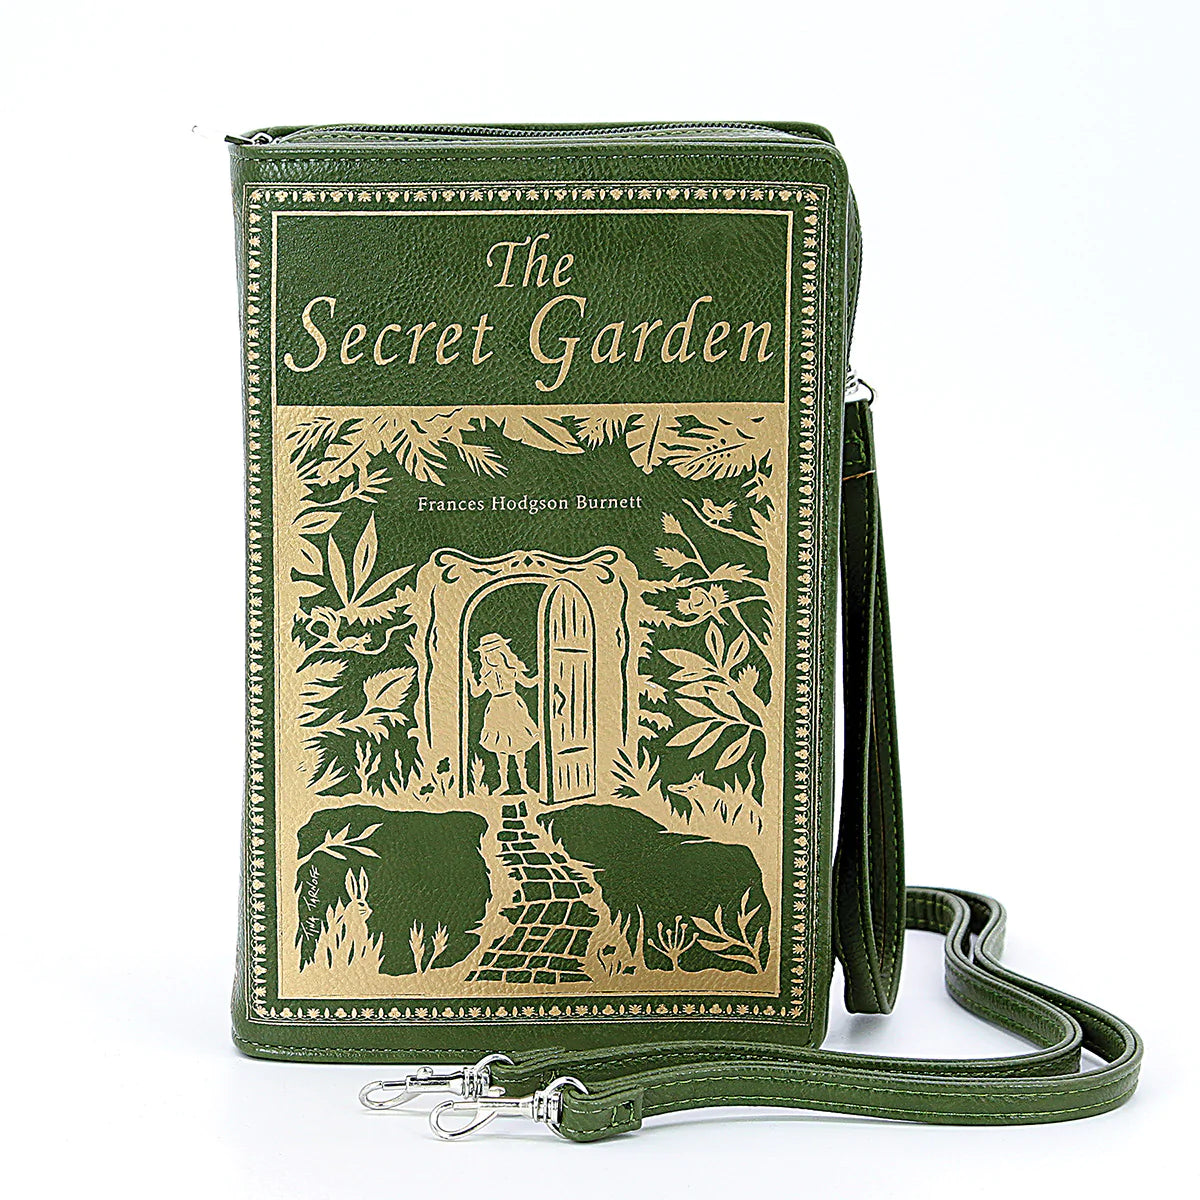 The Secret Garden Book Clutch & Crossbody Purse Green